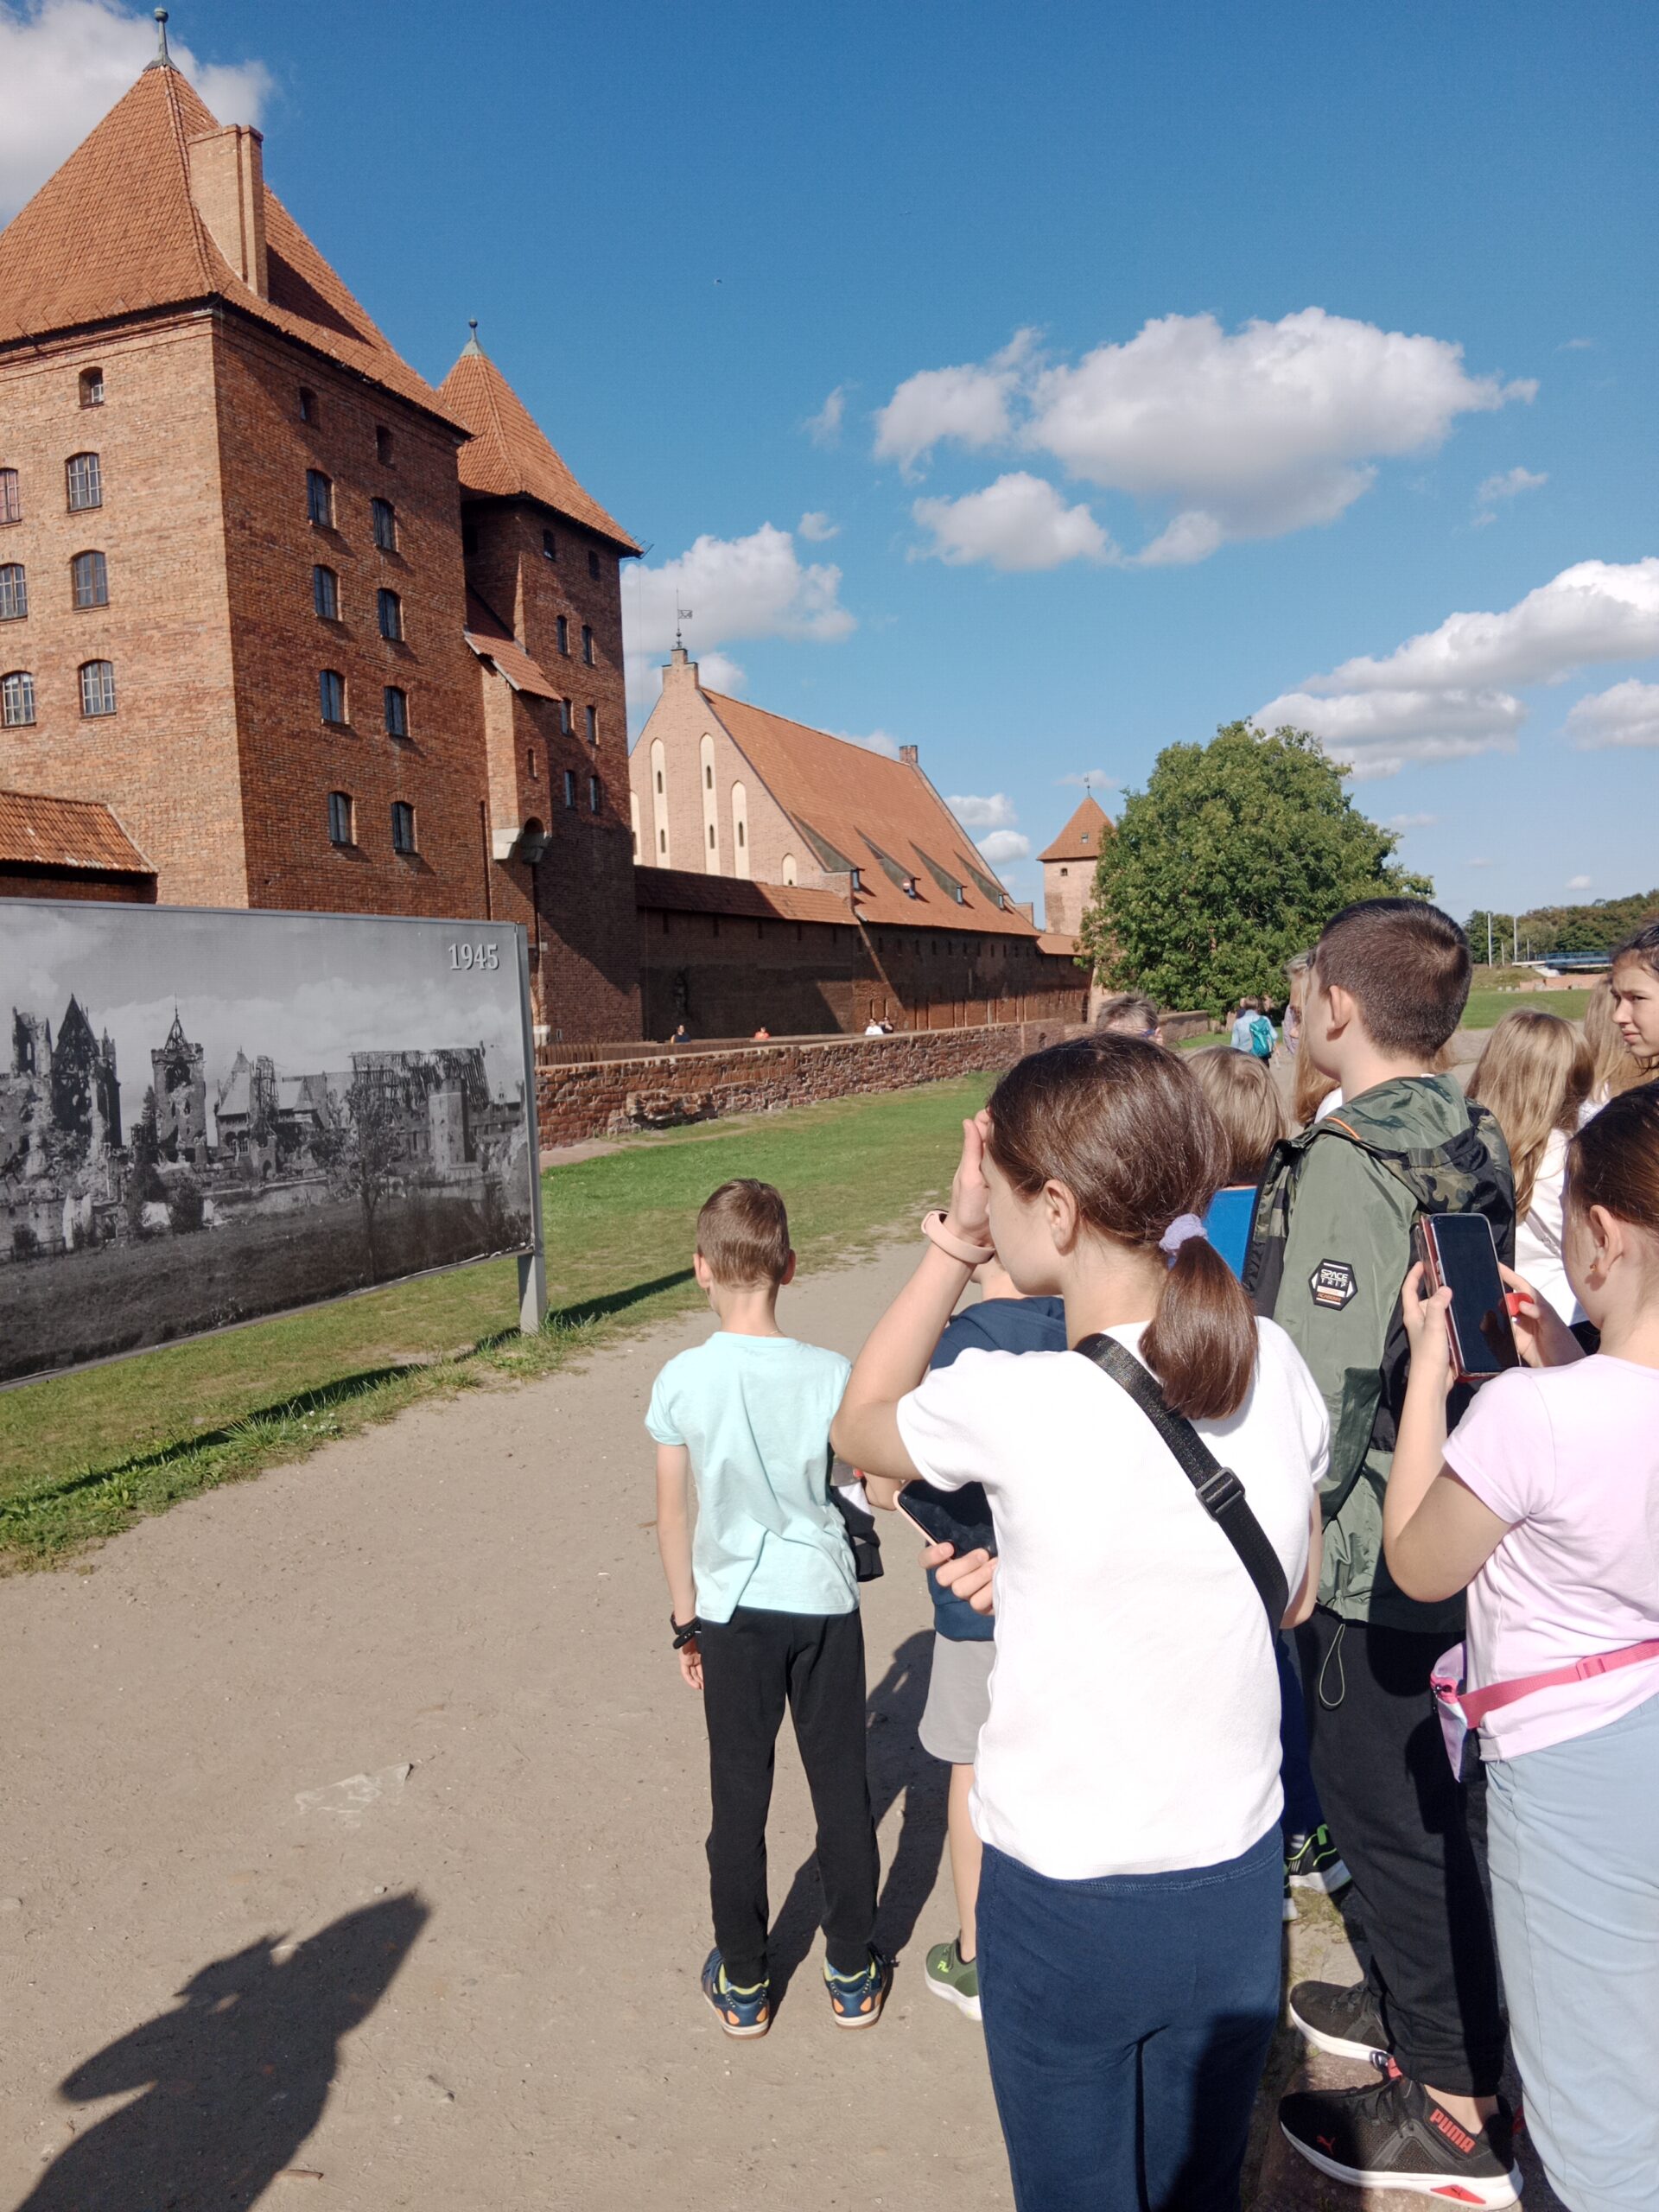 W drodze do Gdańska odwiedziliśmy zamek krzyżacki w Malborku.